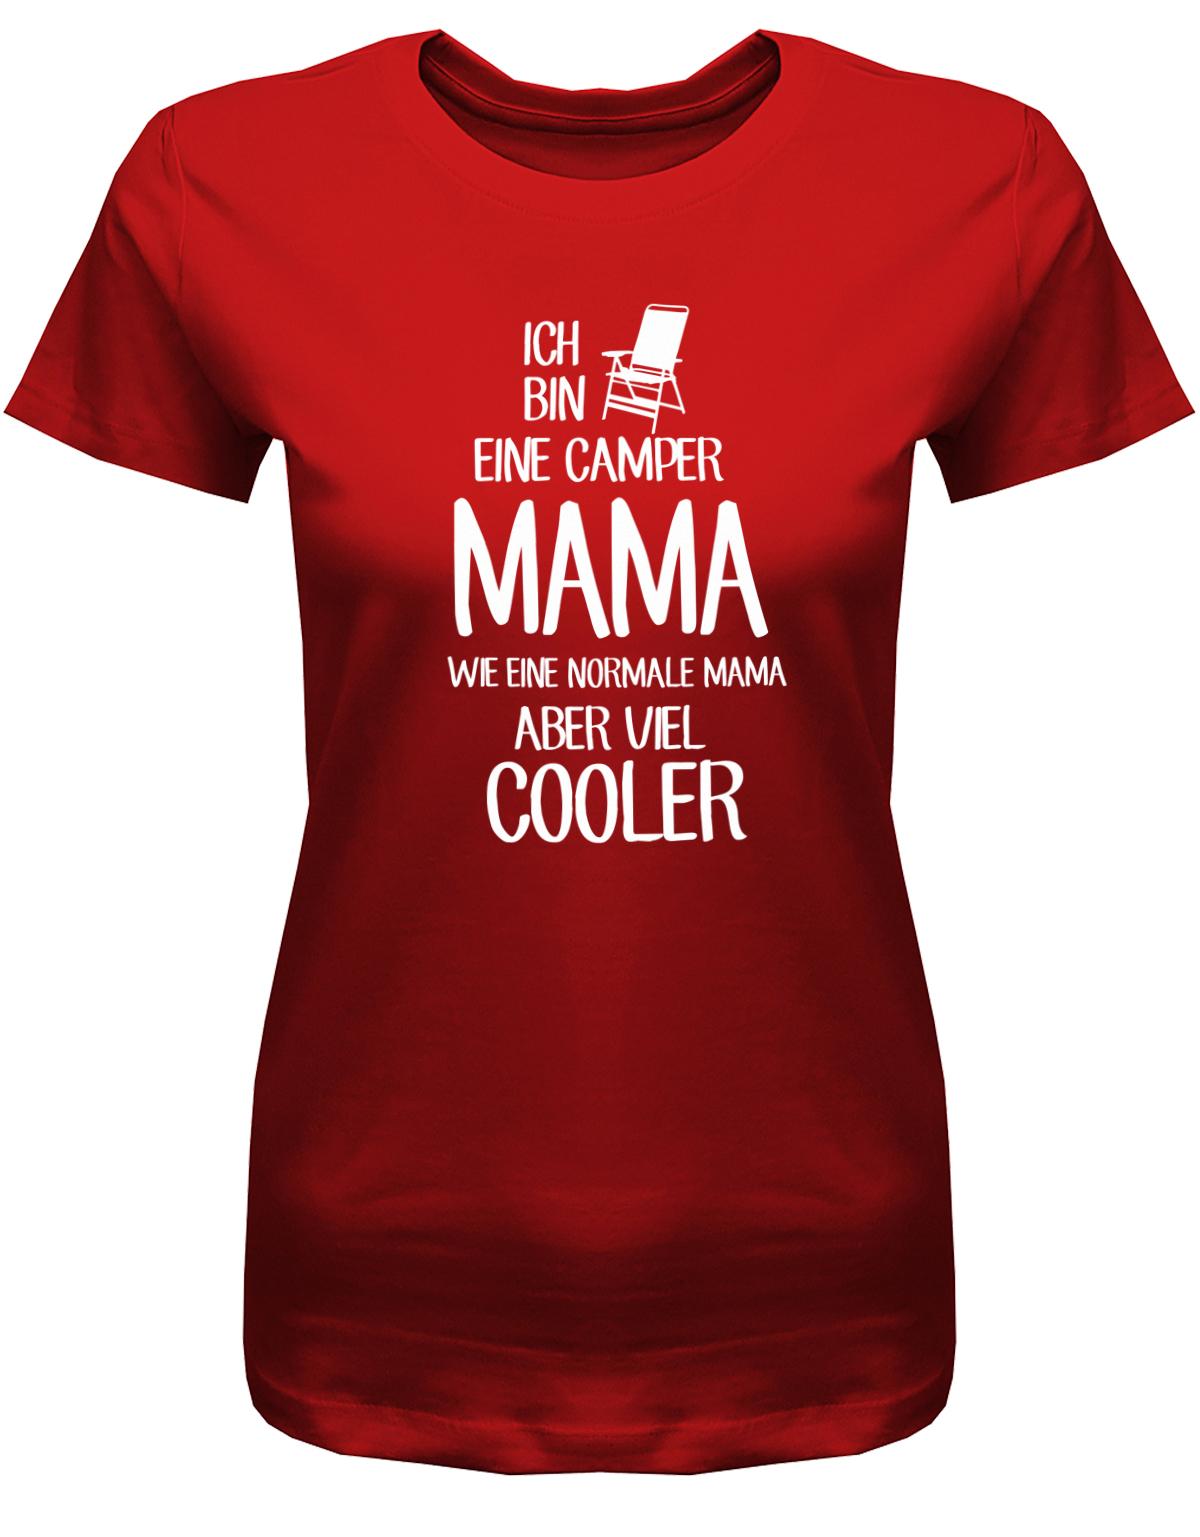 Ich-bineine-camper-Mama-wie-eine-normale-Mama-aber-viel-cooler-Damen-Camping-Shirt-Rot